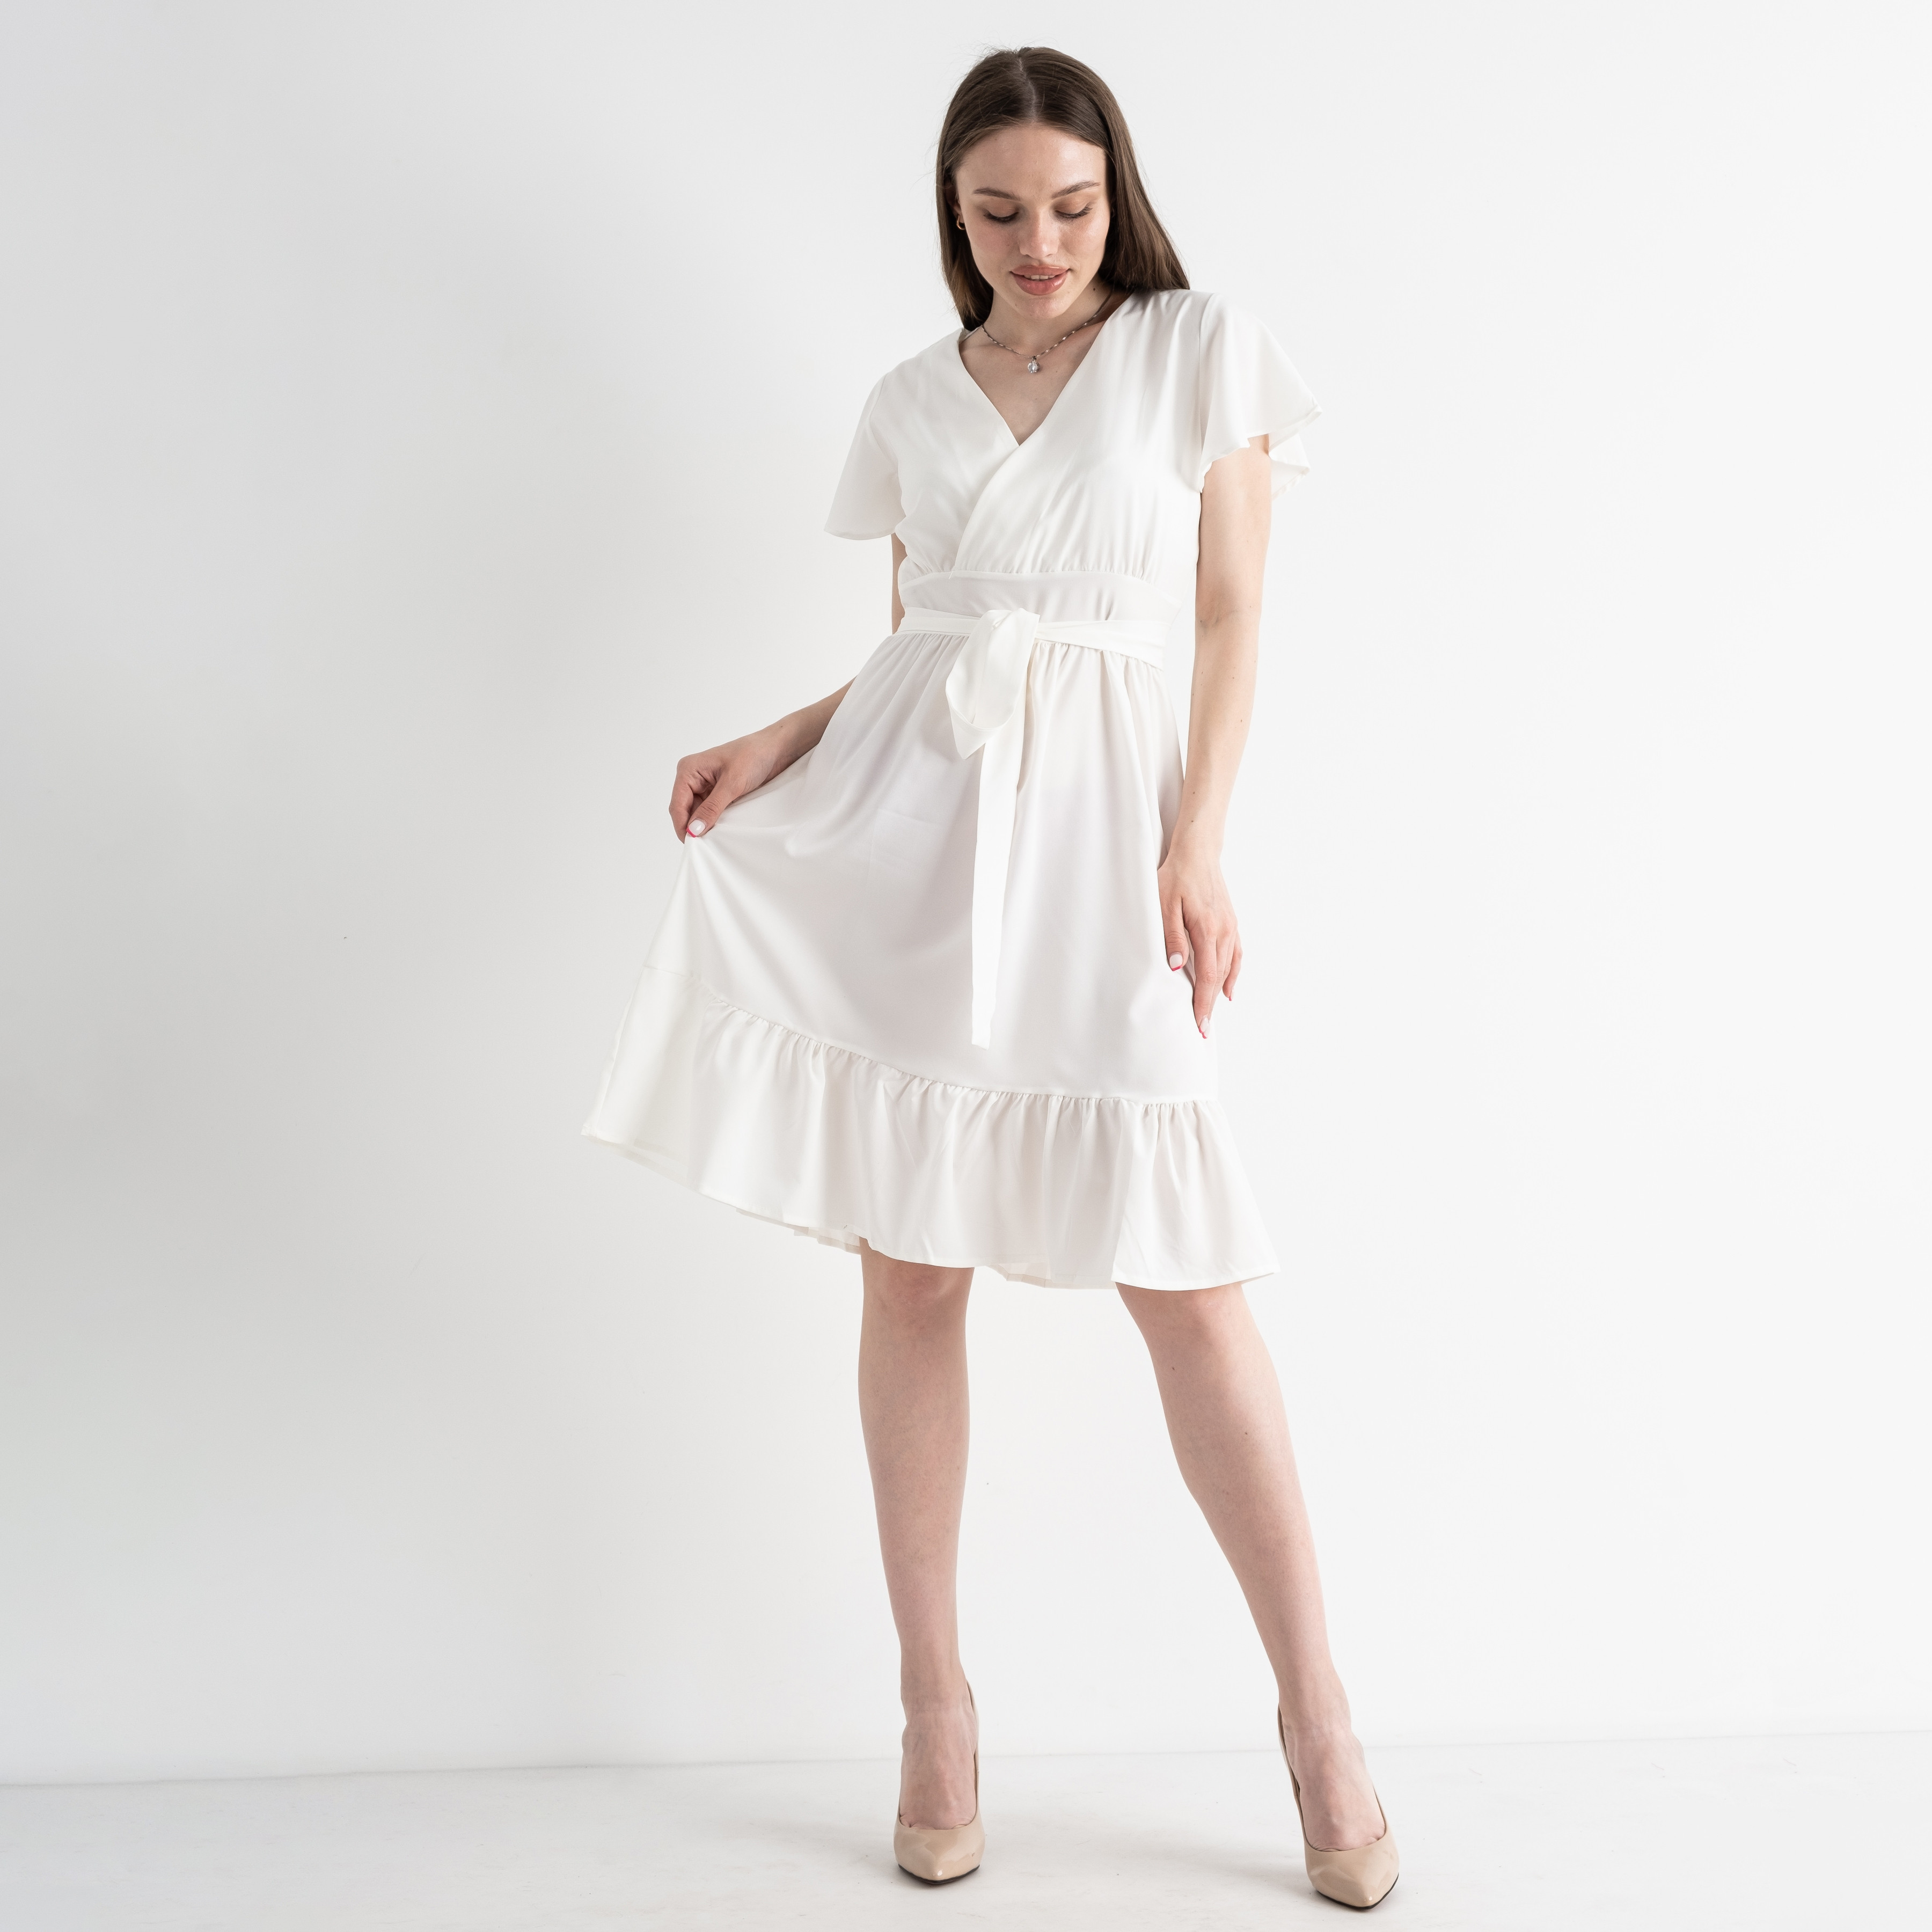 8076-10 БЕЛОЕ платье женское текстильное (3 ед.размеры: M.L.XL)